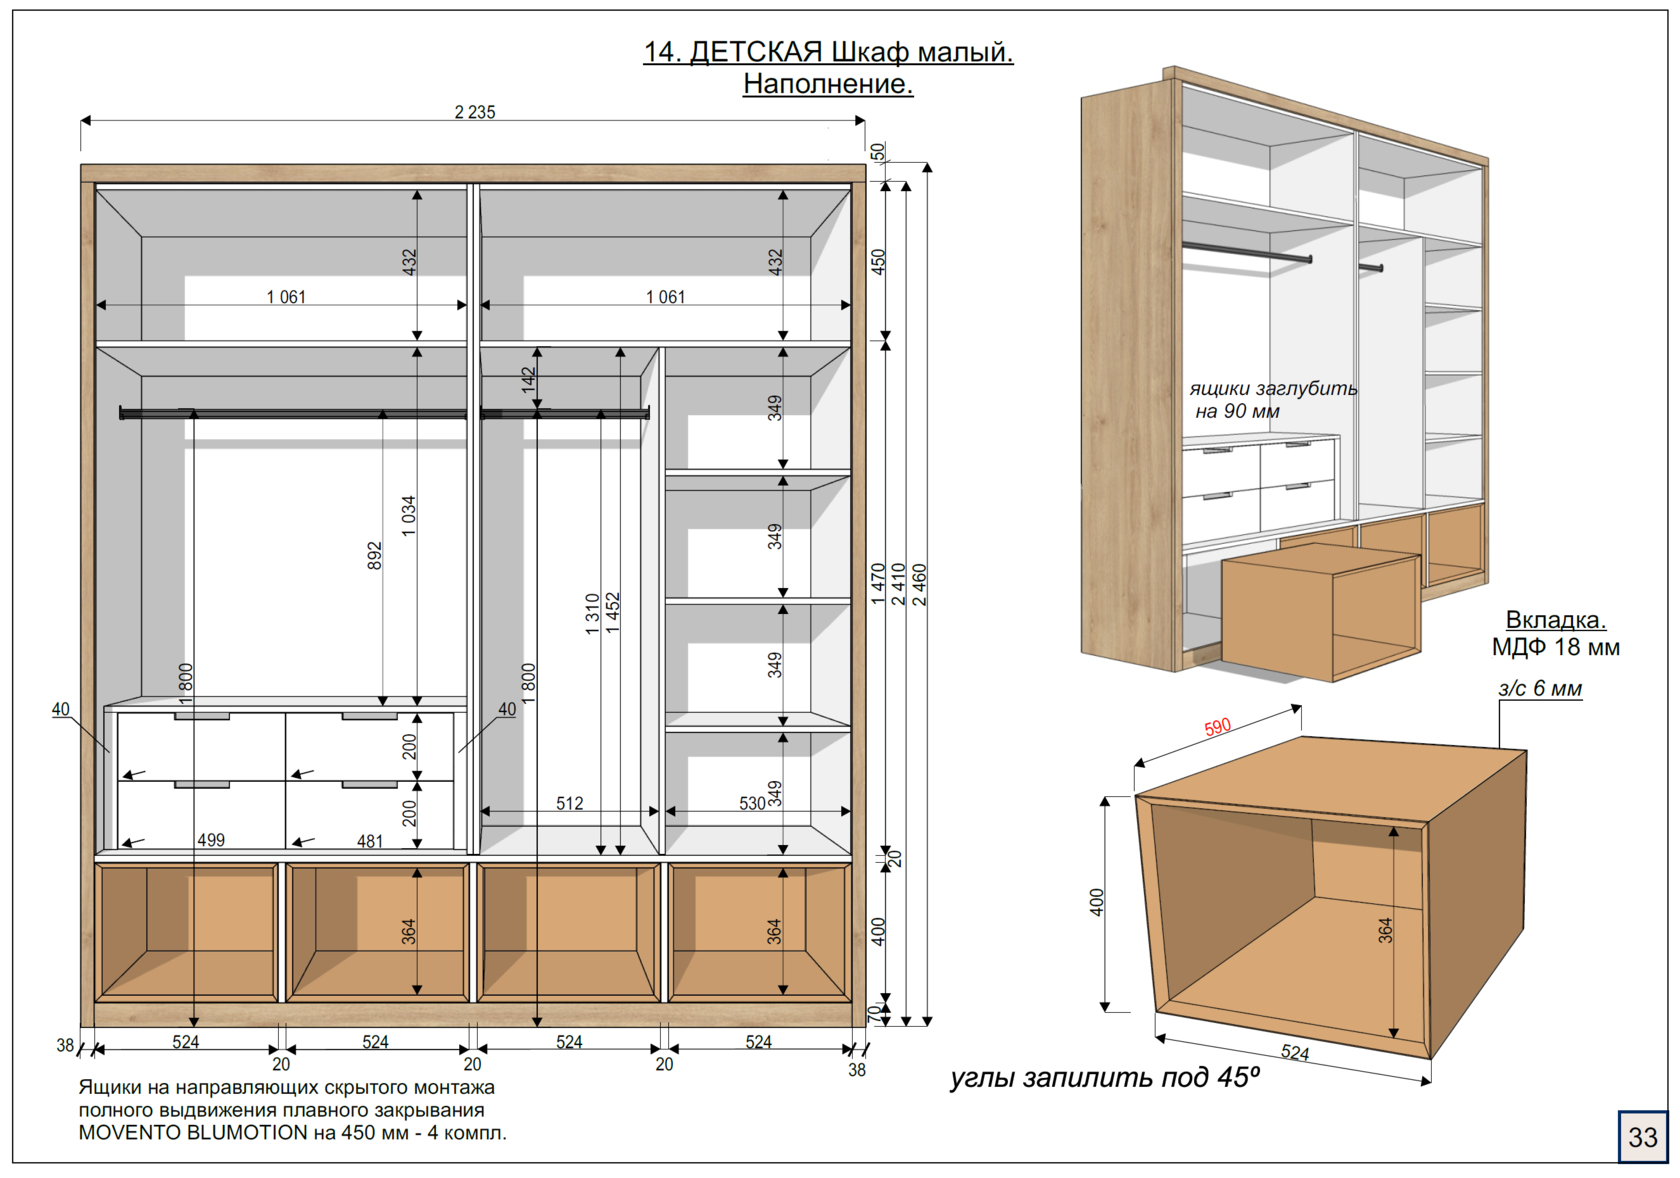 Шкаф для материалов размеры. Шкаф собрать Размеры. Производство шкафов. Замеры для изготовления шкафа. Материал для изготовления шкафа.